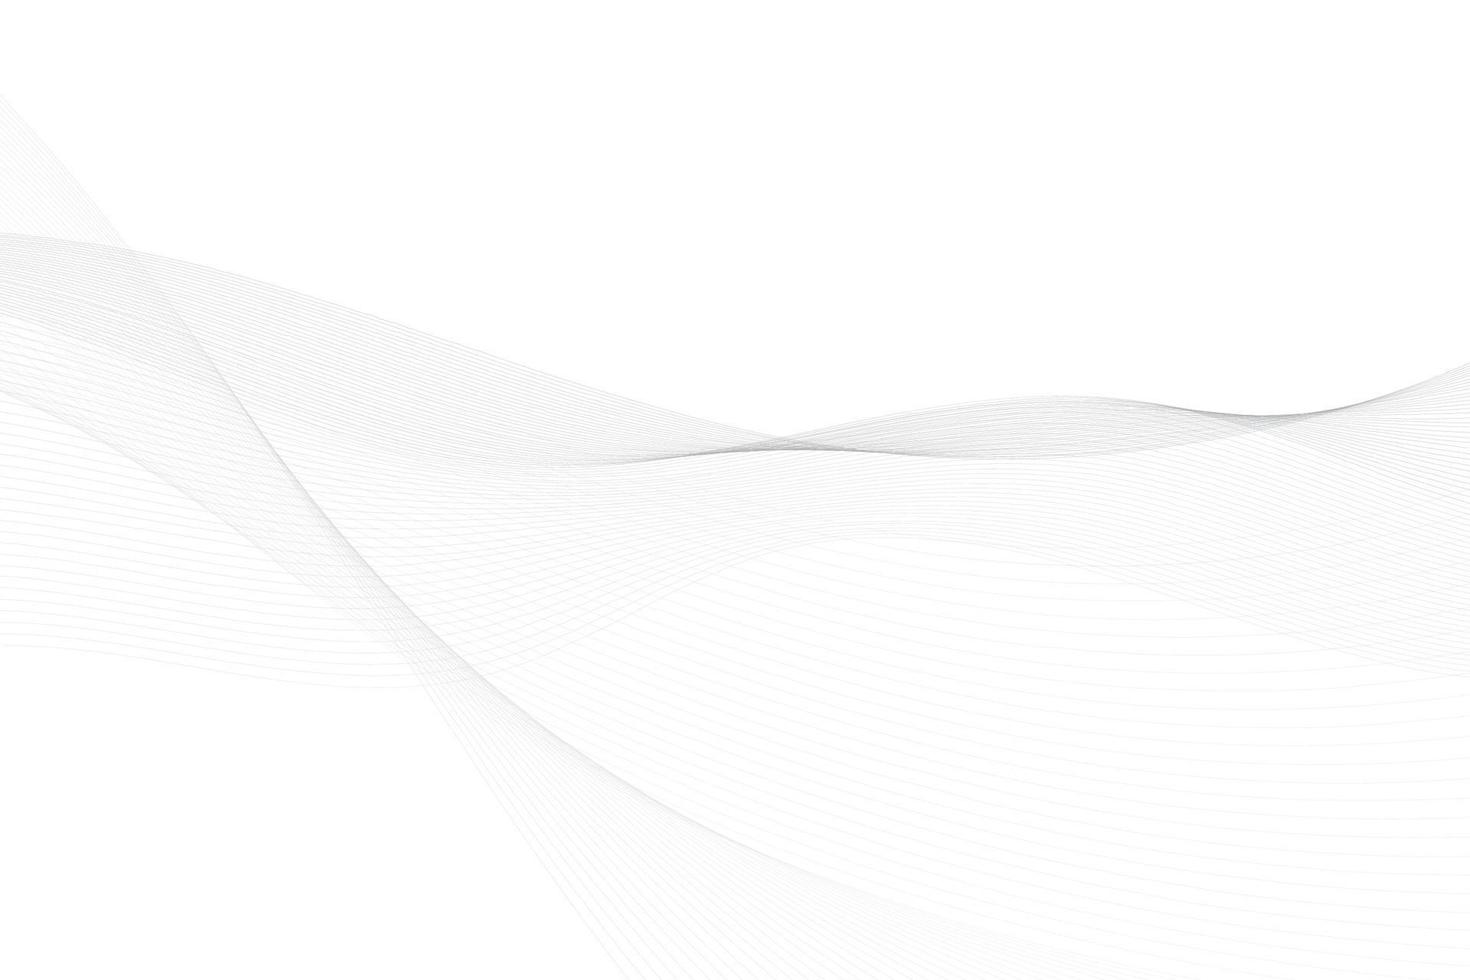 abstrakt vit och grå Färg, modern design Ränder bakgrund med Vinka element. vektor illustration.